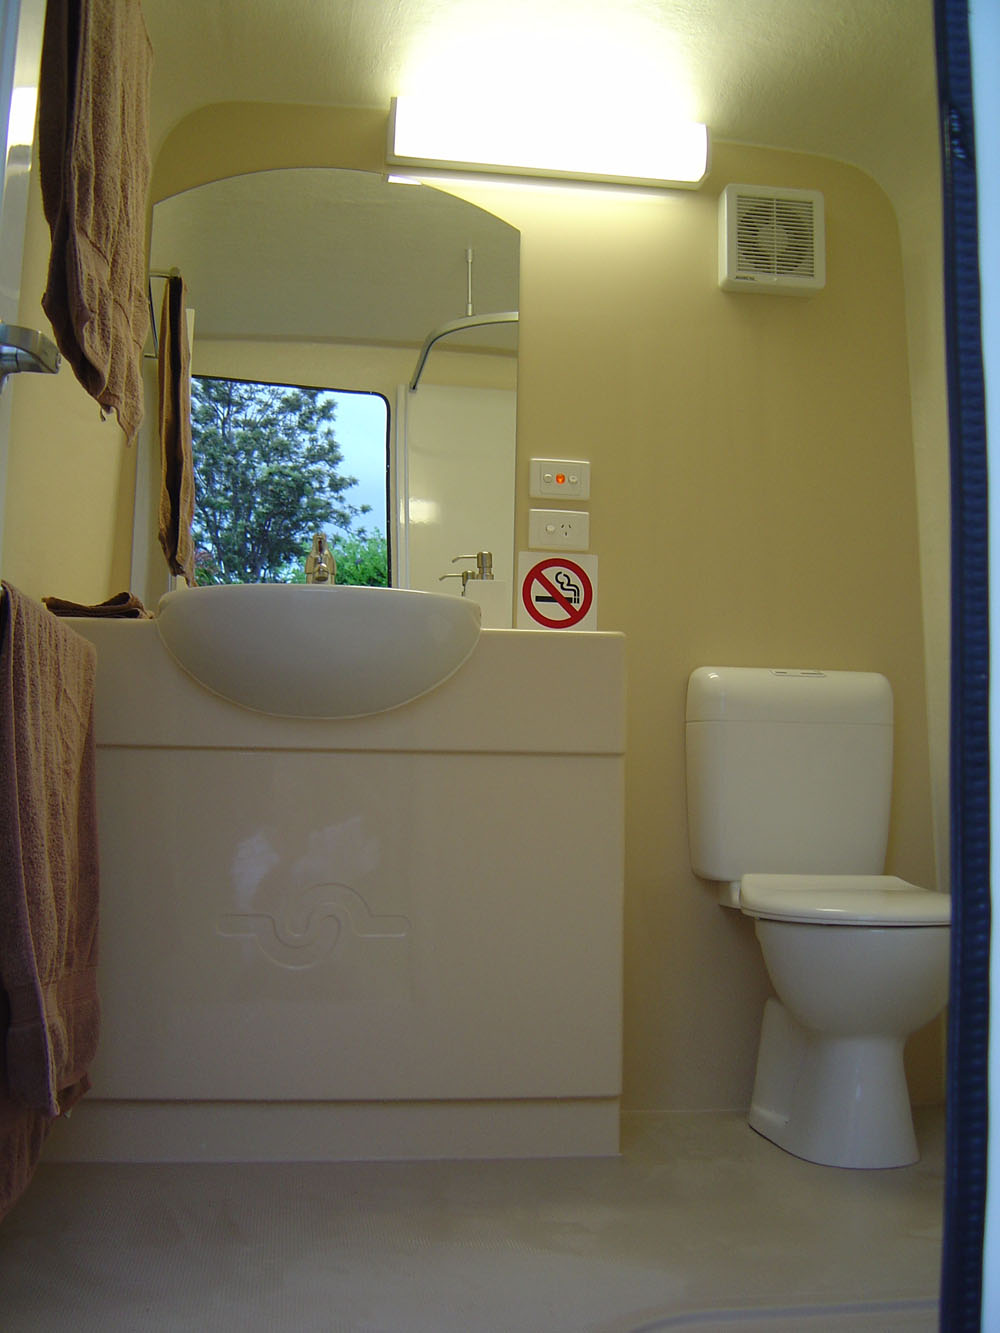 portable bathrooms bathroom toilet vanity mirror mobile wheels